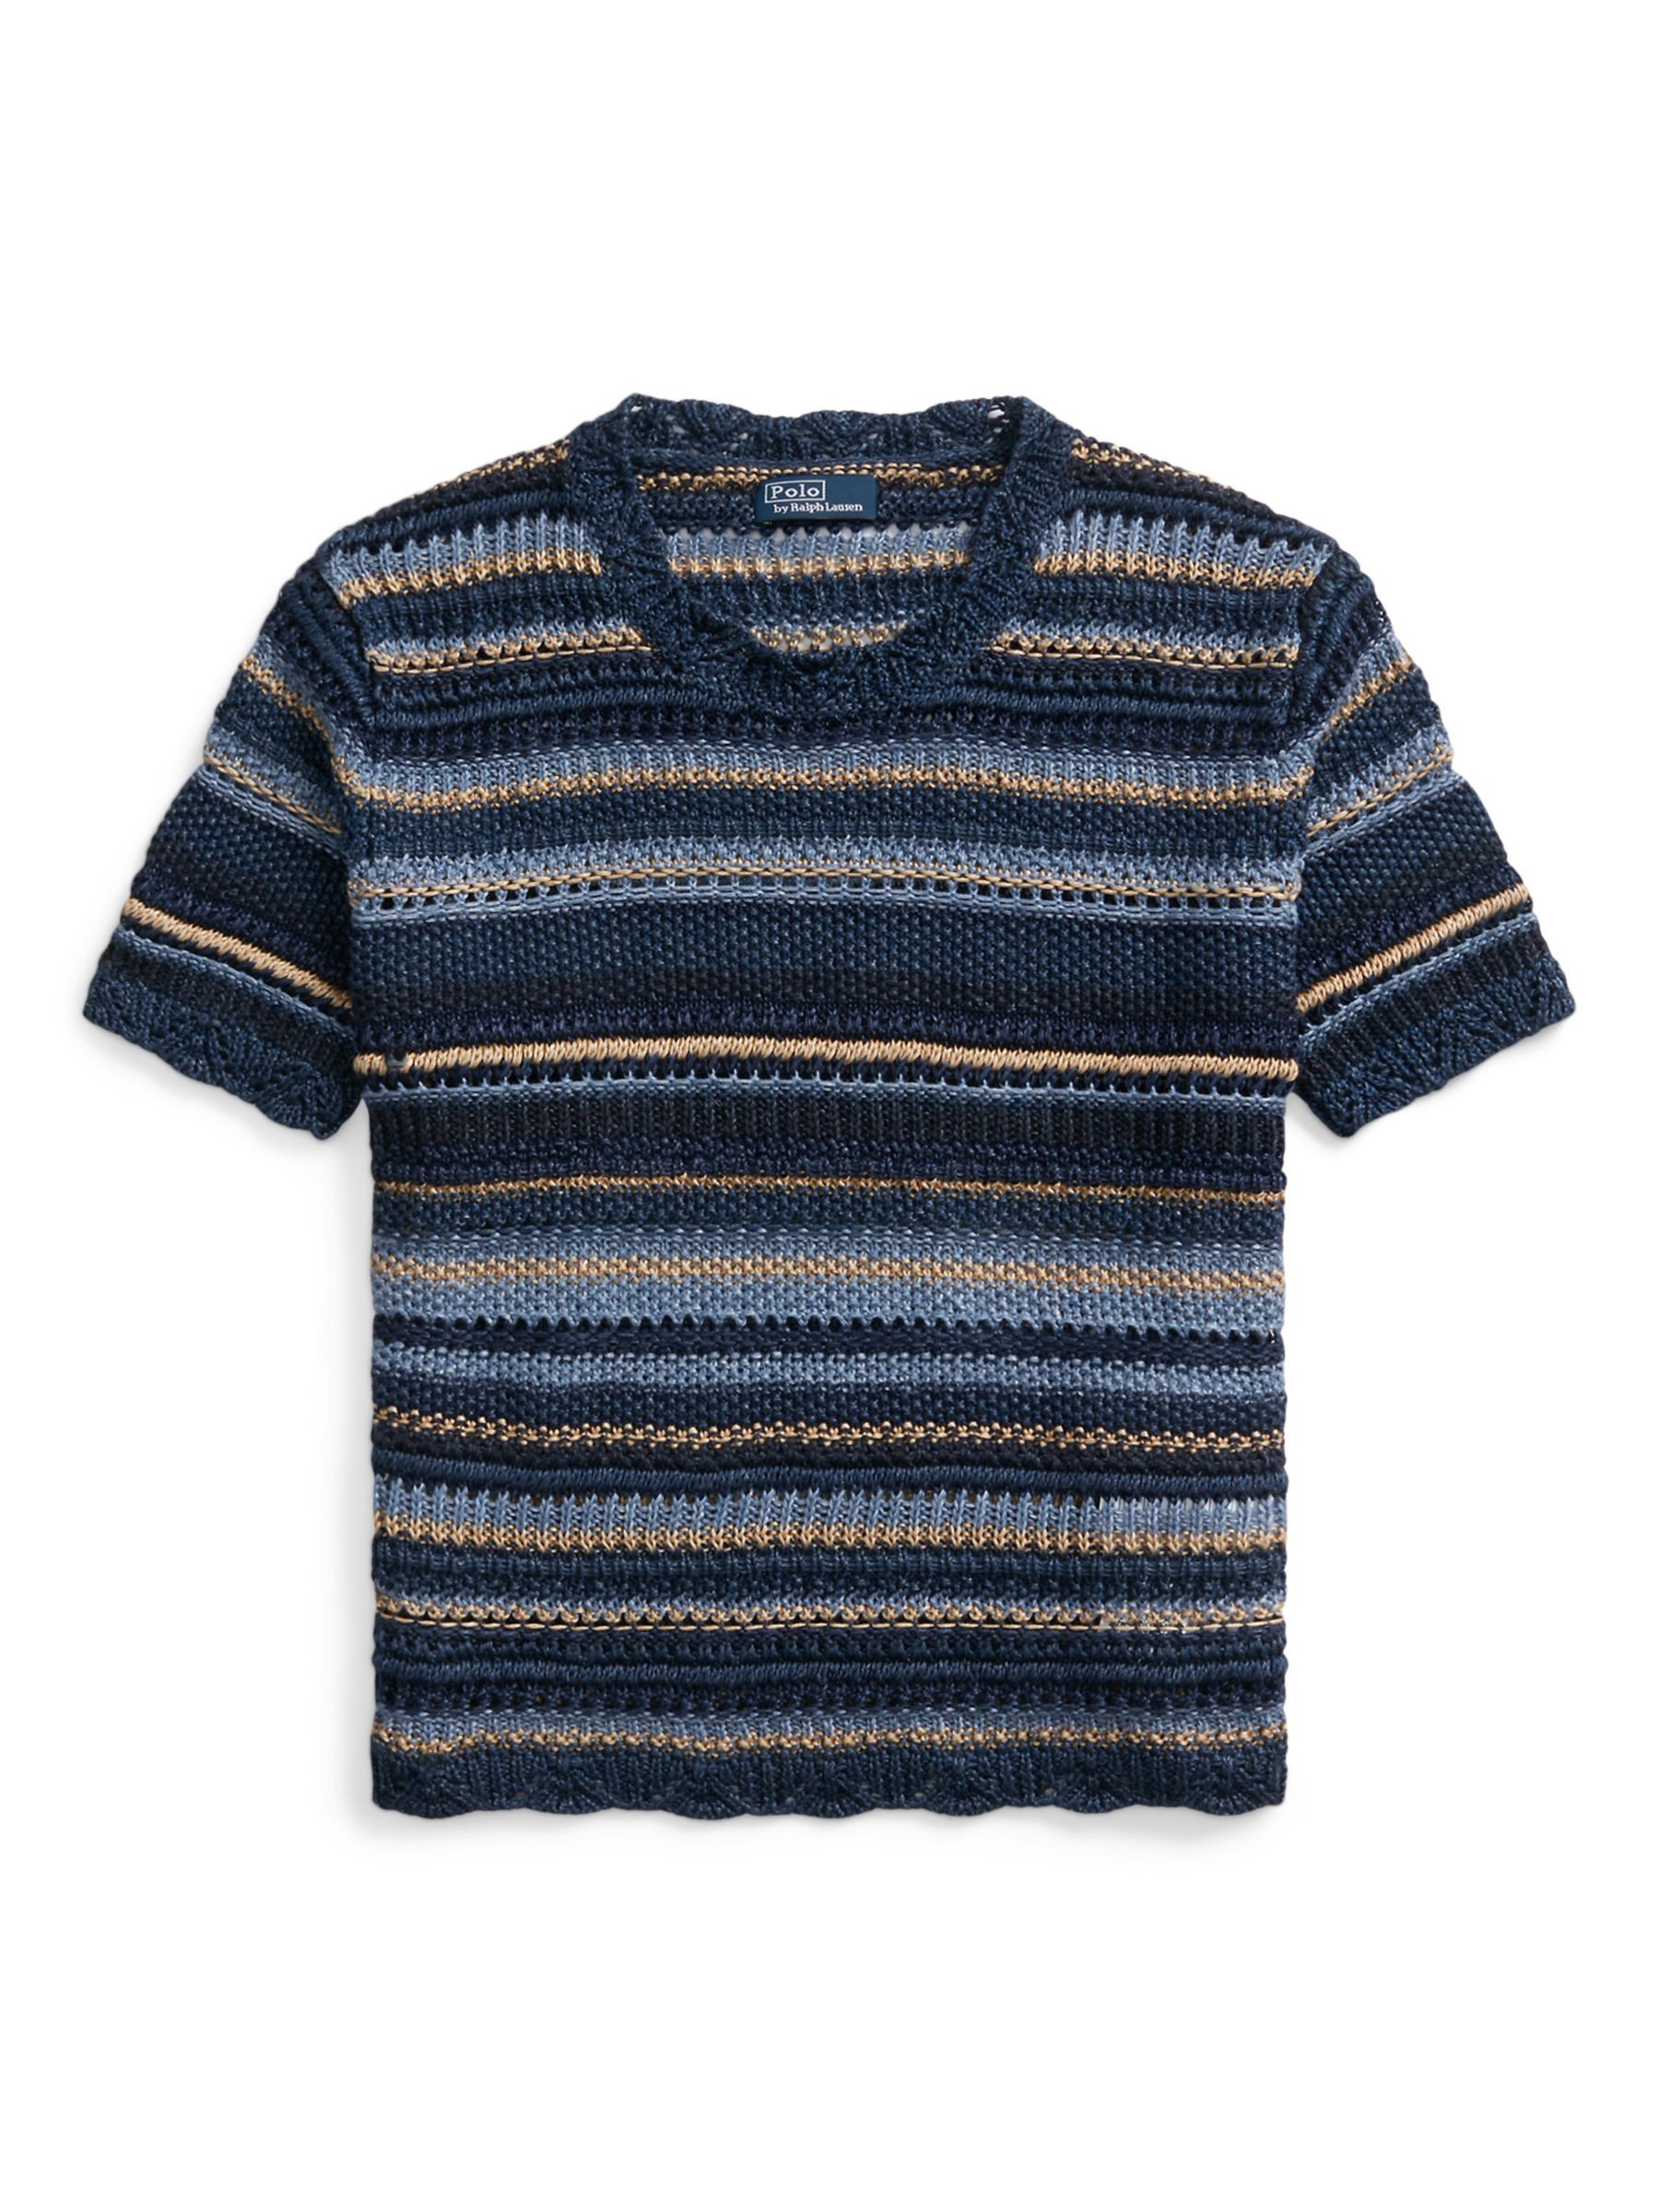 Polo Ralph Lauren Stripe Crochet Knit Top, Blue/Multi, S